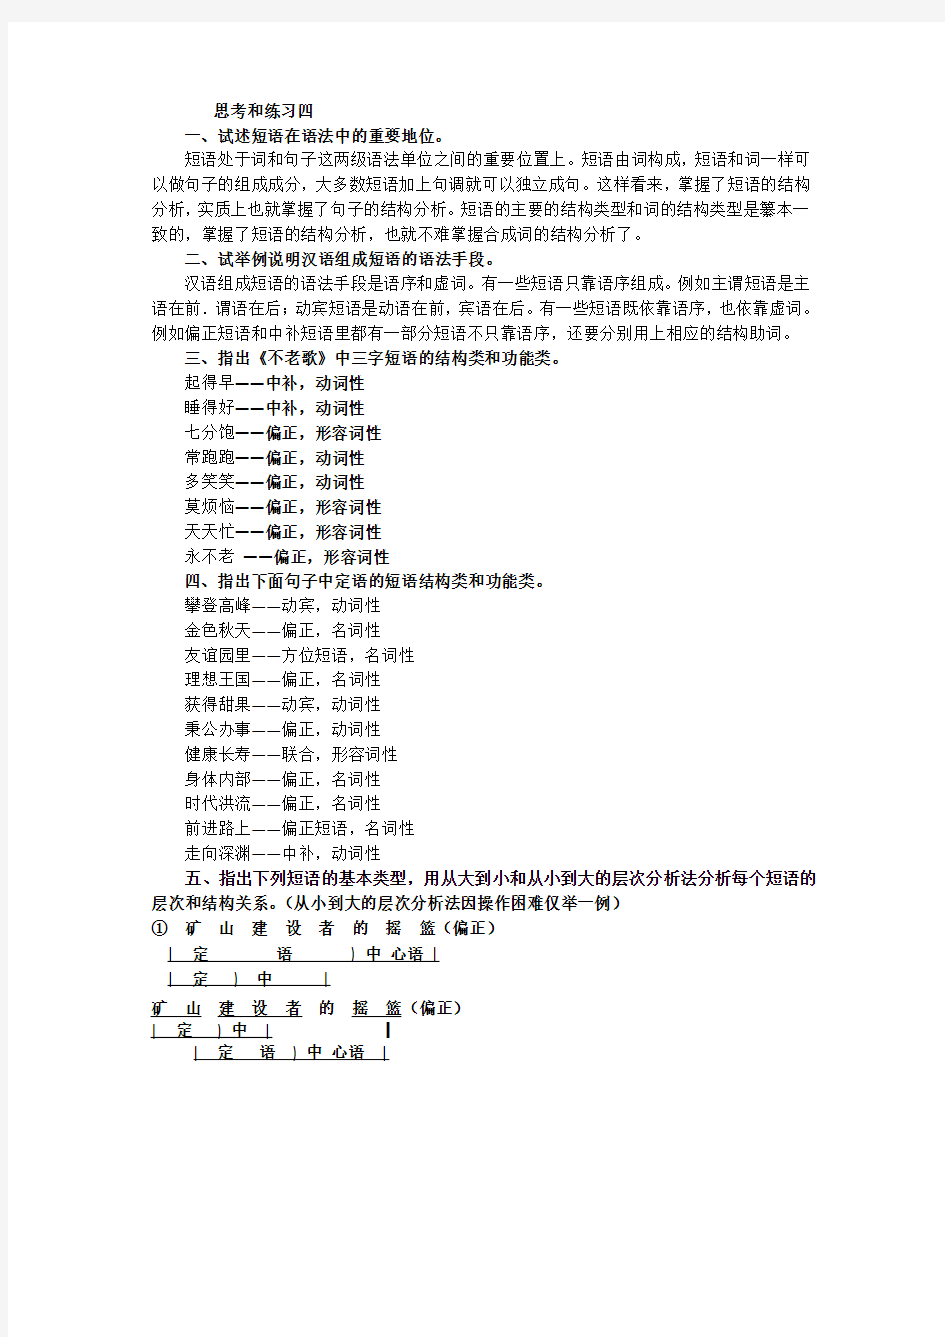 黄廖《现代汉语》(增订四版)下册第五章语法思考和练习四答案